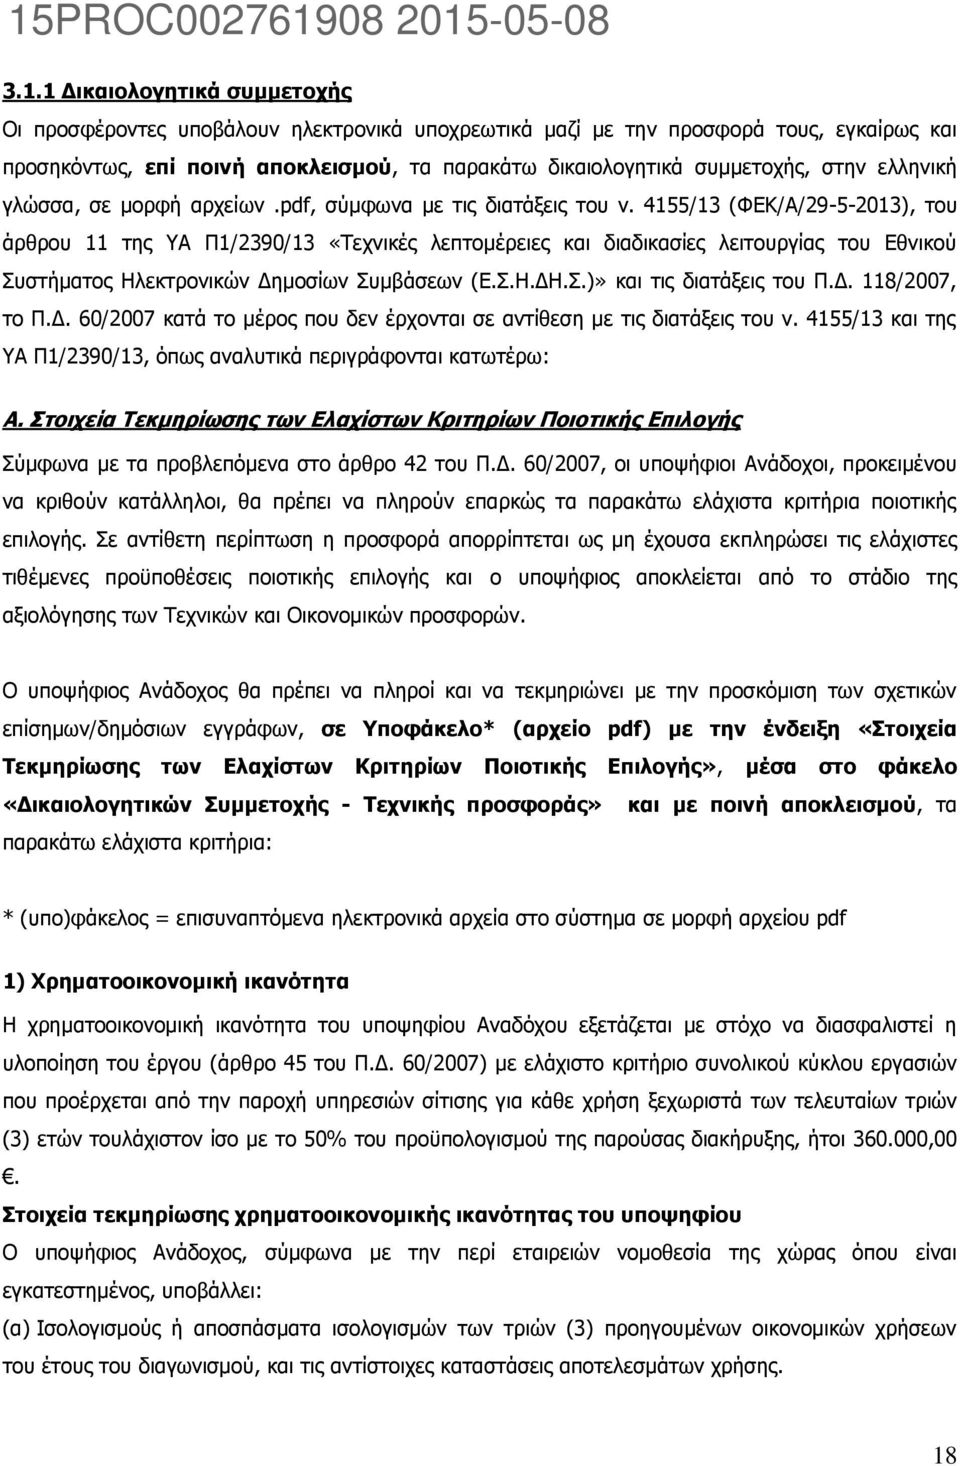 4155/13 (ΦΕΚ/Α/29-5-2013), του άρθρου 11 της ΥΑ Π1/2390/13 «Τεχνικές λεπτομέρειες και διαδικασίες λειτουργίας του Εθνικού Συστήματος Ηλεκτρονικών Δημοσίων Συμβάσεων (Ε.Σ.Η.ΔΗ.Σ.)» και τις διατάξεις του Π.